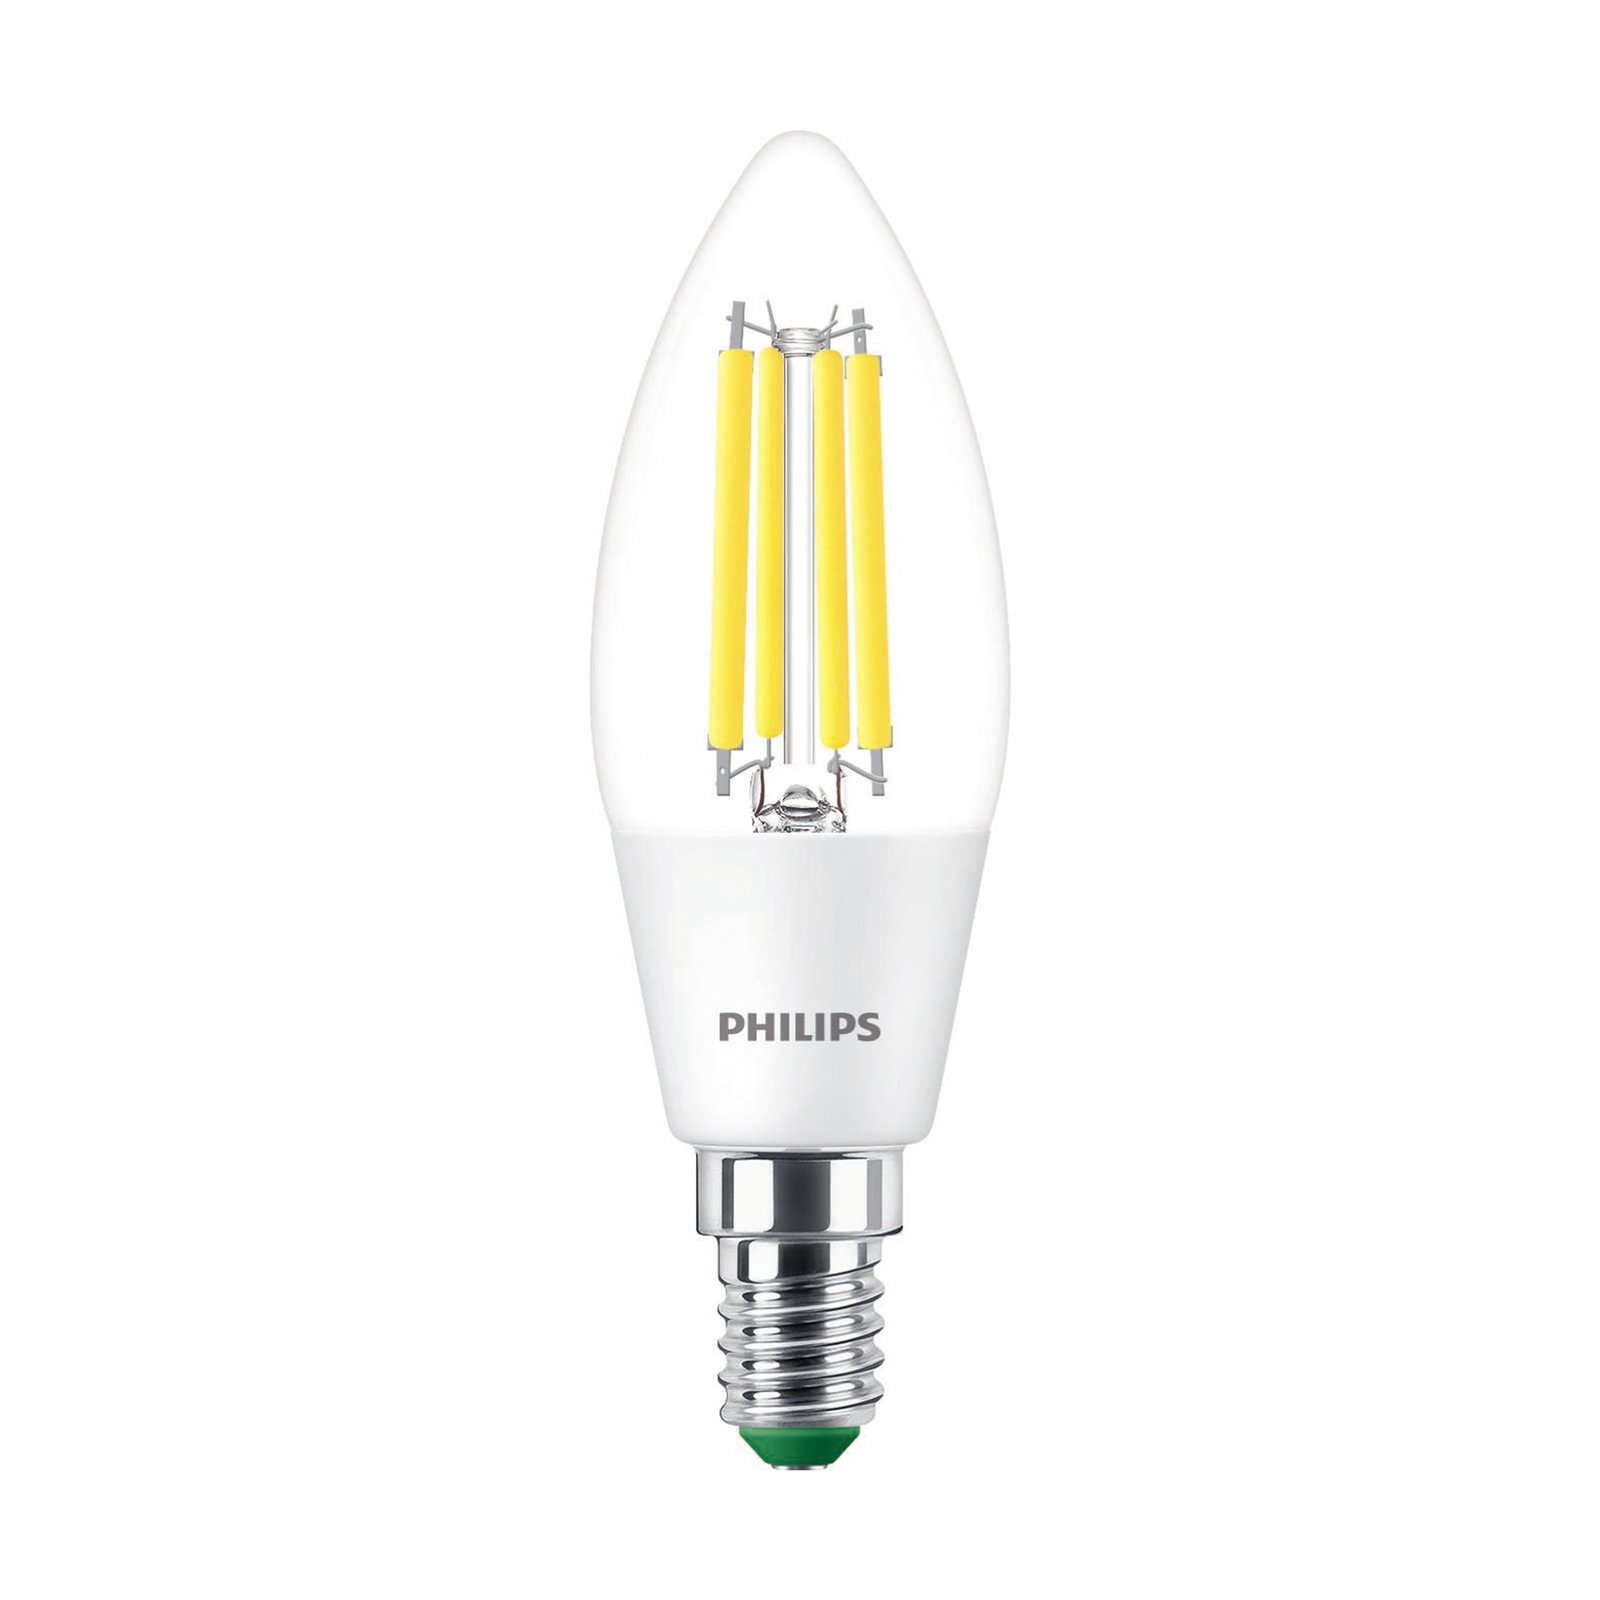 Philips E14 vela LED C35 2,3W 485lm 4.000K claro